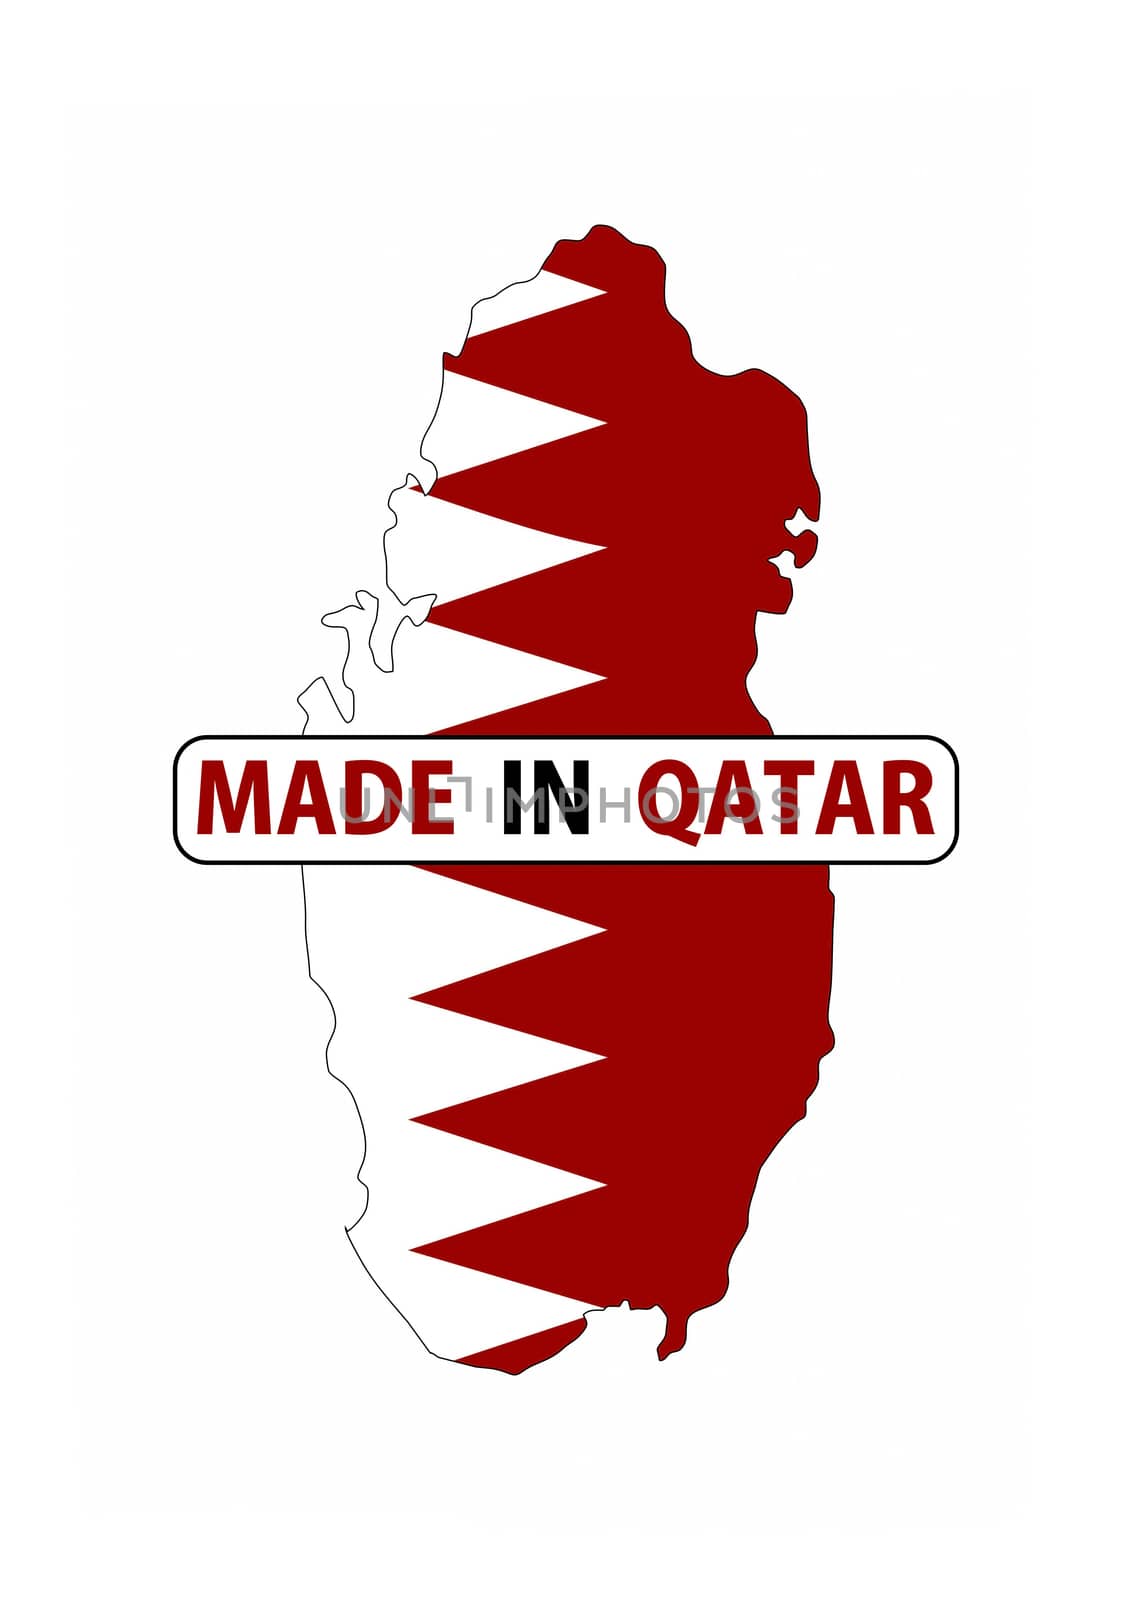 made in qatar by tony4urban